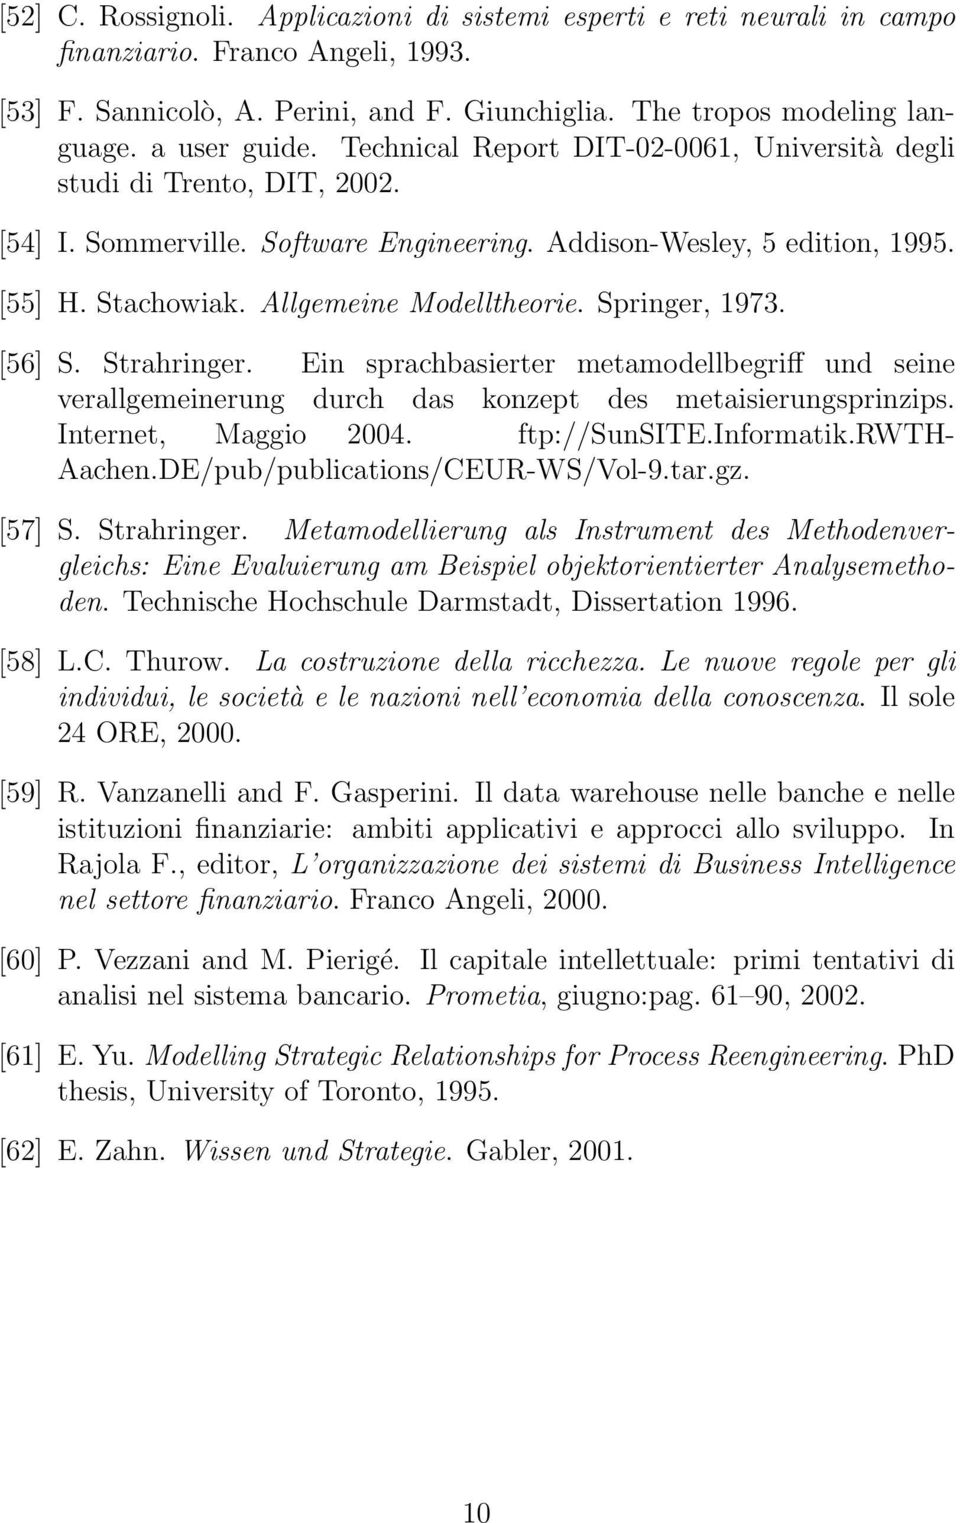 Allgemeine Modelltheorie. Springer, 1973. [56] S. Strahringer. Ein sprachbasierter metamodellbegriff und seine verallgemeinerung durch das konzept des metaisierungsprinzips. Internet, Maggio 2004.